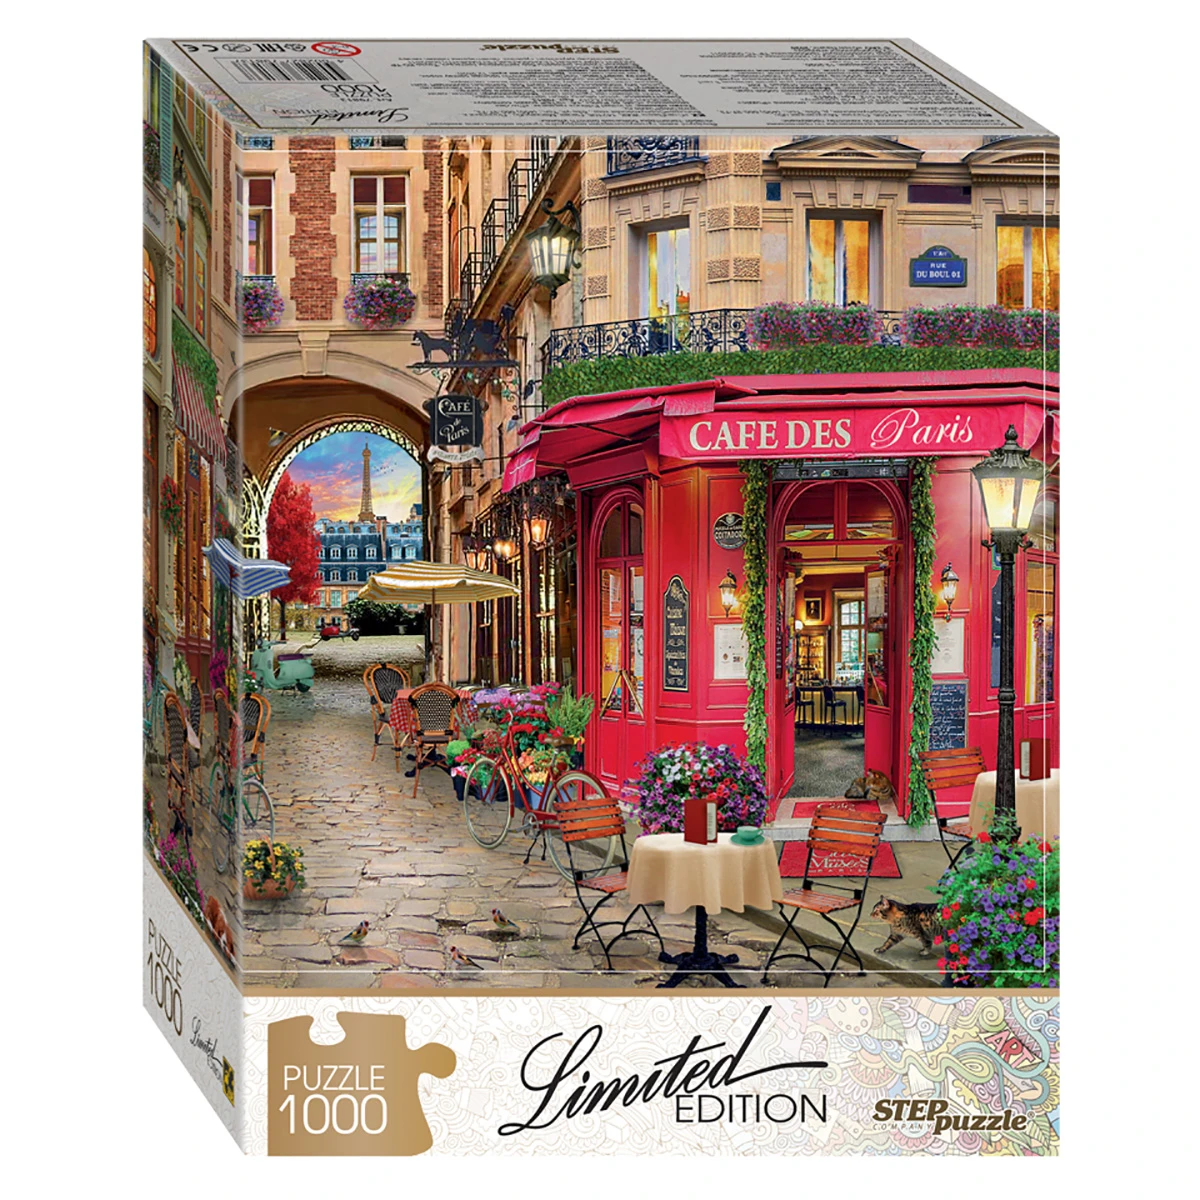 Арт.79813 Мозаика "puzzle" 1000 "Cafe des Paris" (Limited